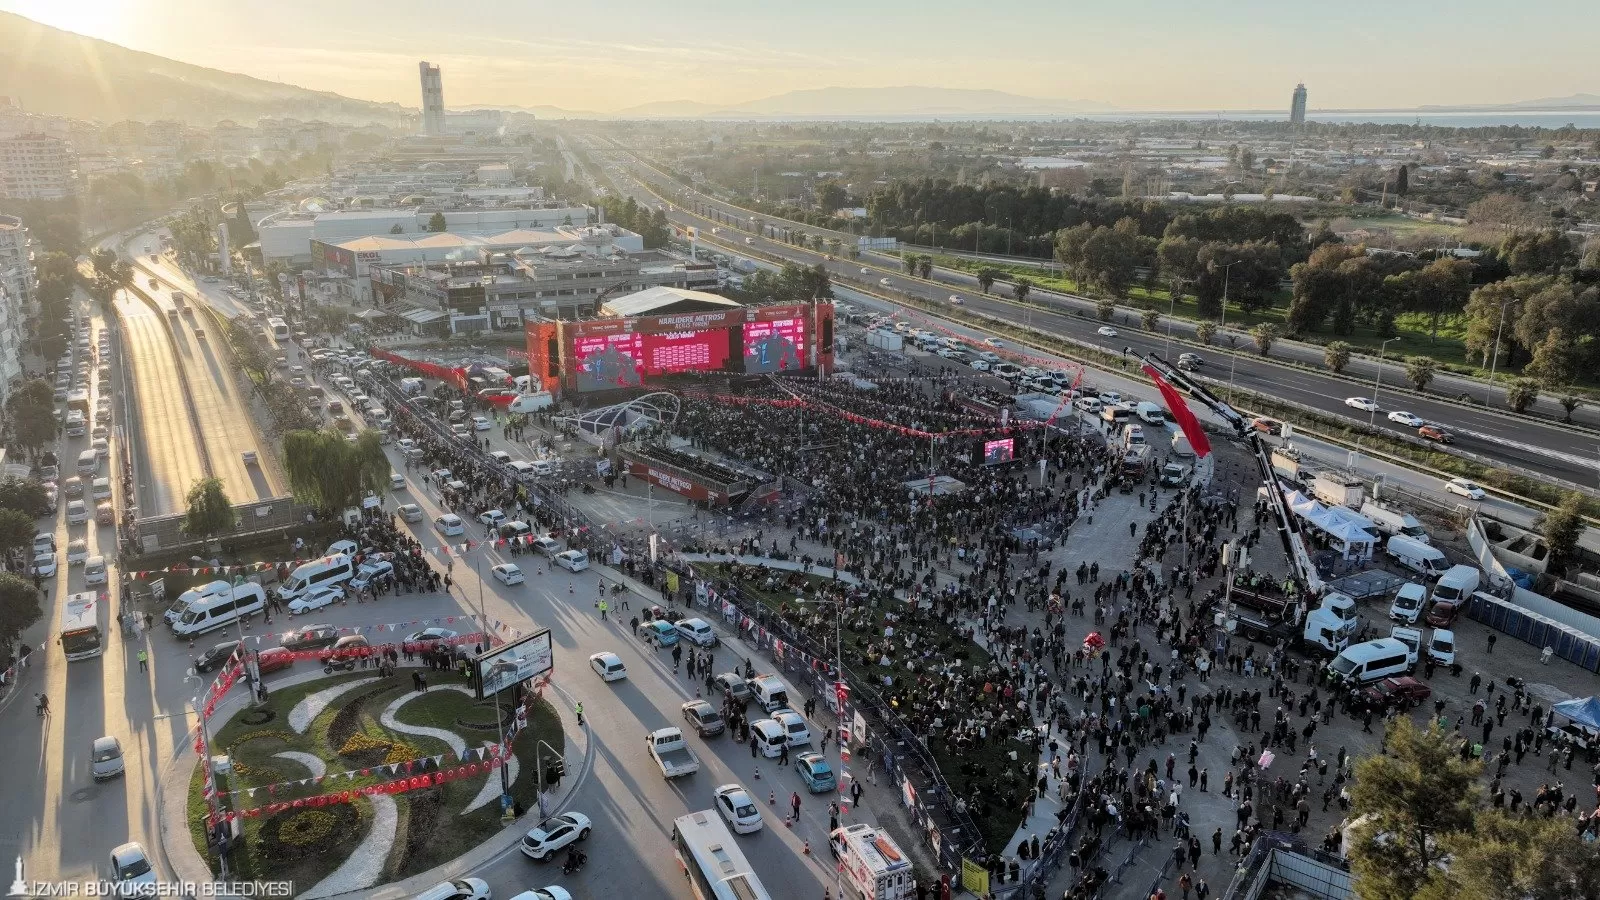 İzmir'de Fahrettin Altay-Narlıdere Metrosu'nun açılışı coşkuyla gerçekleşti. DJ Ersin ve Haluk Levent konserleriyle binlerce İzmirli eğlendi.